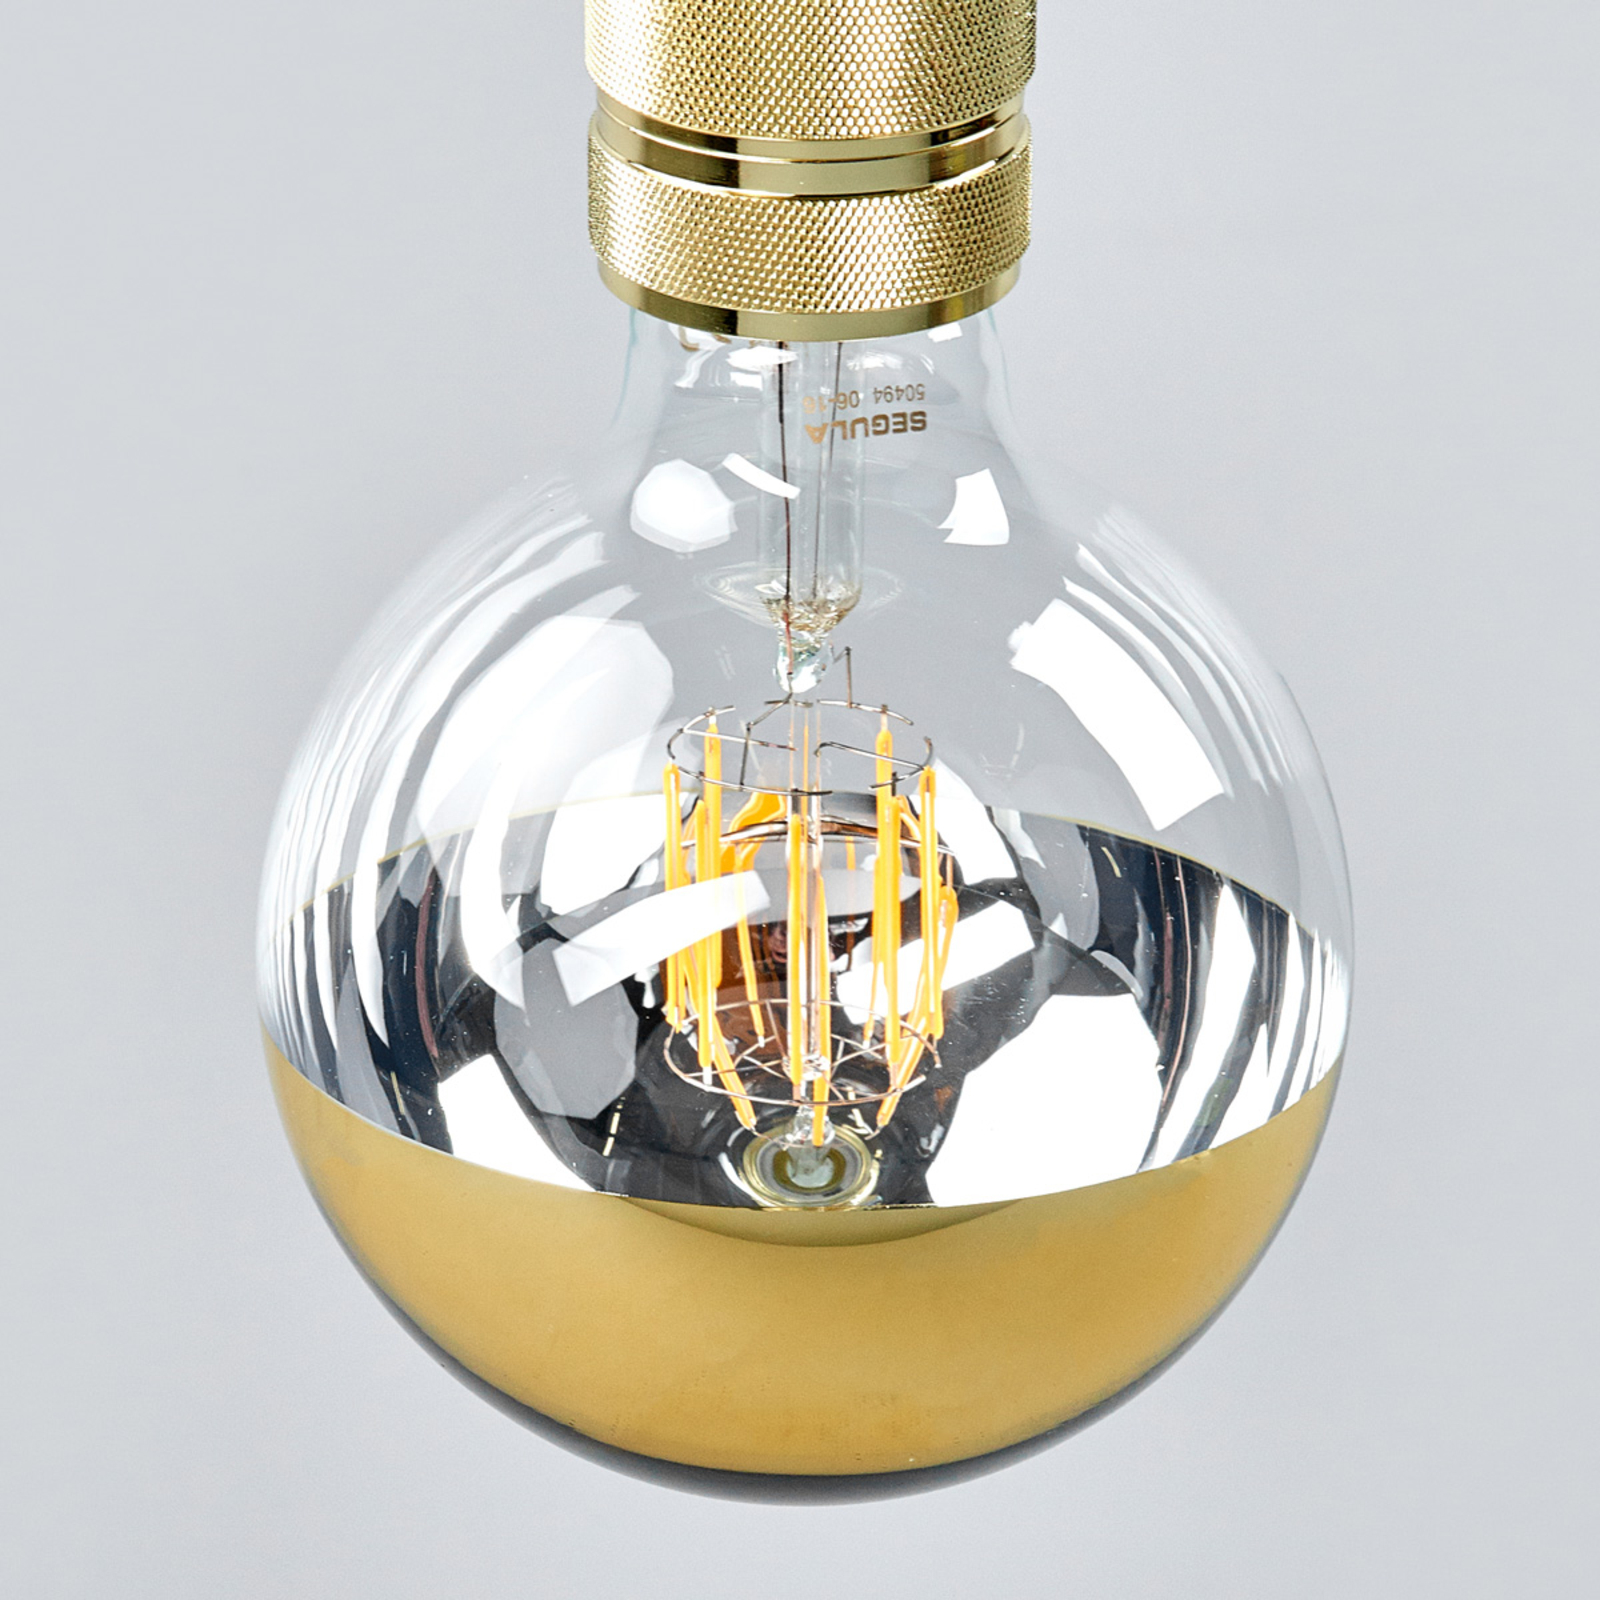 Ampoule à tête miroir LED E27 7 W dorée